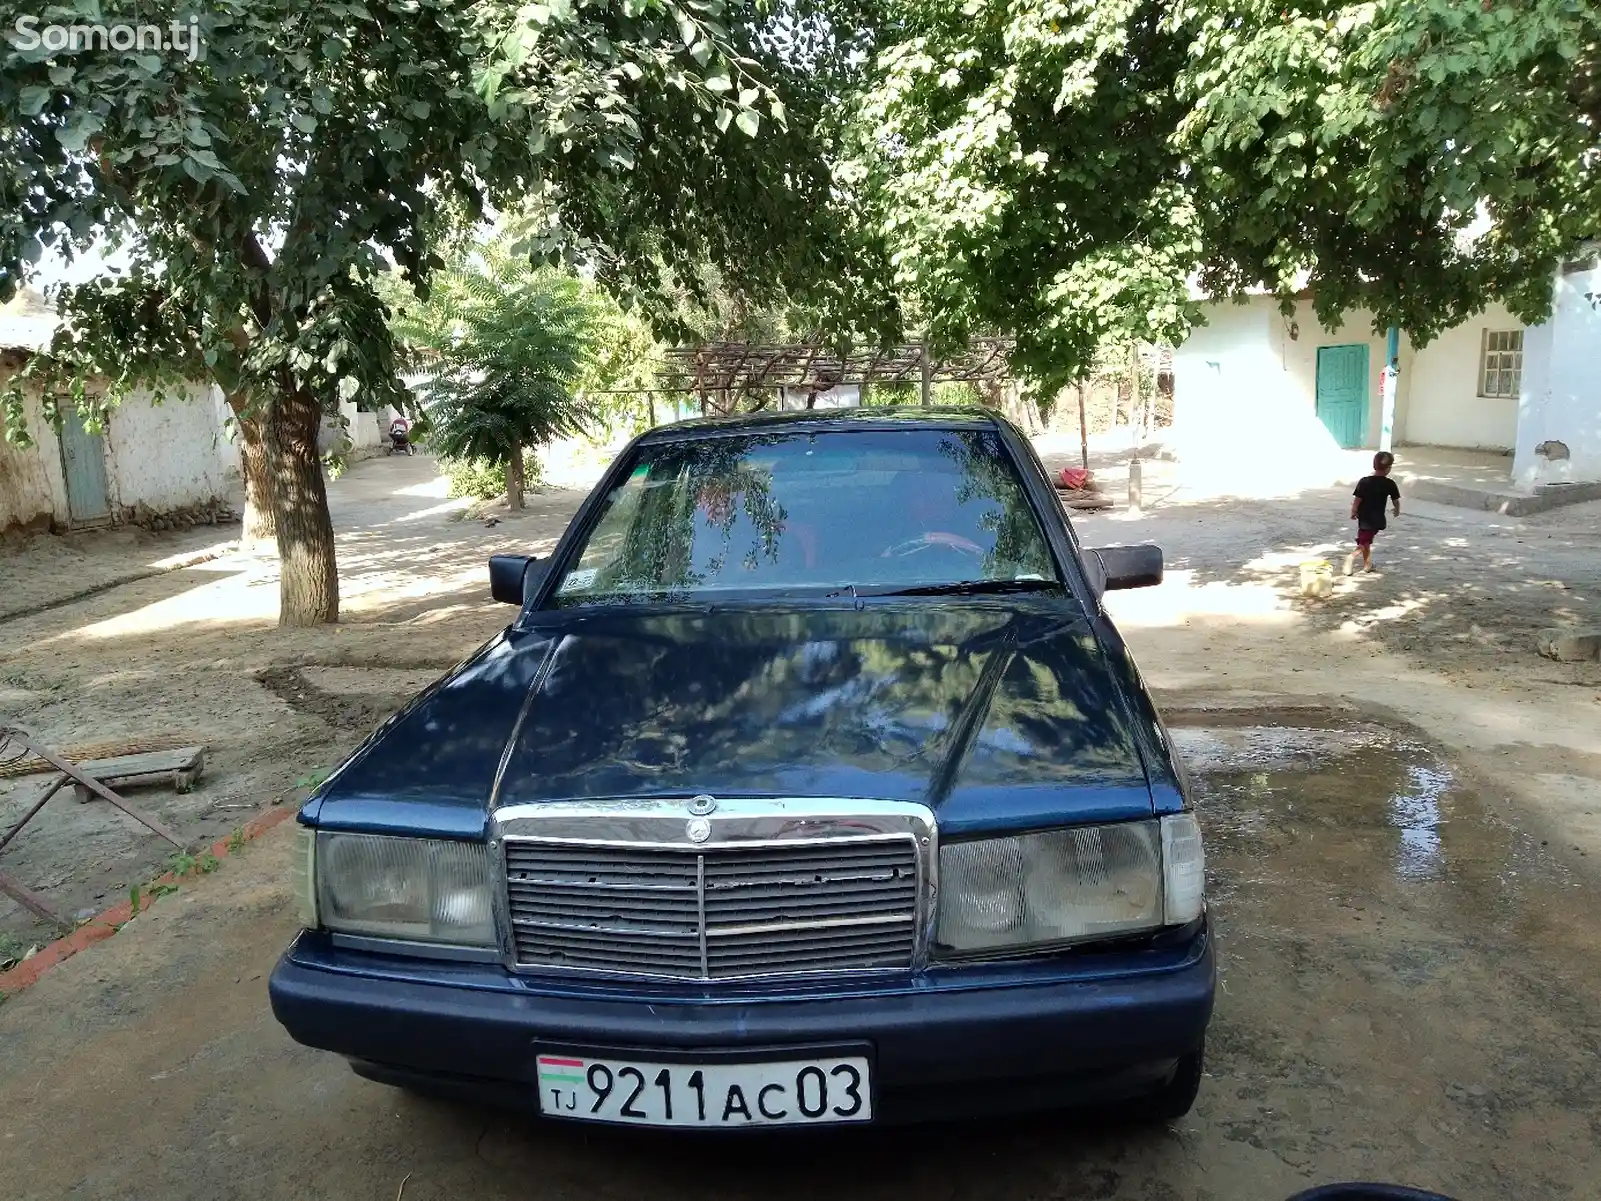 Mercedes-Benz W201, 1992-1